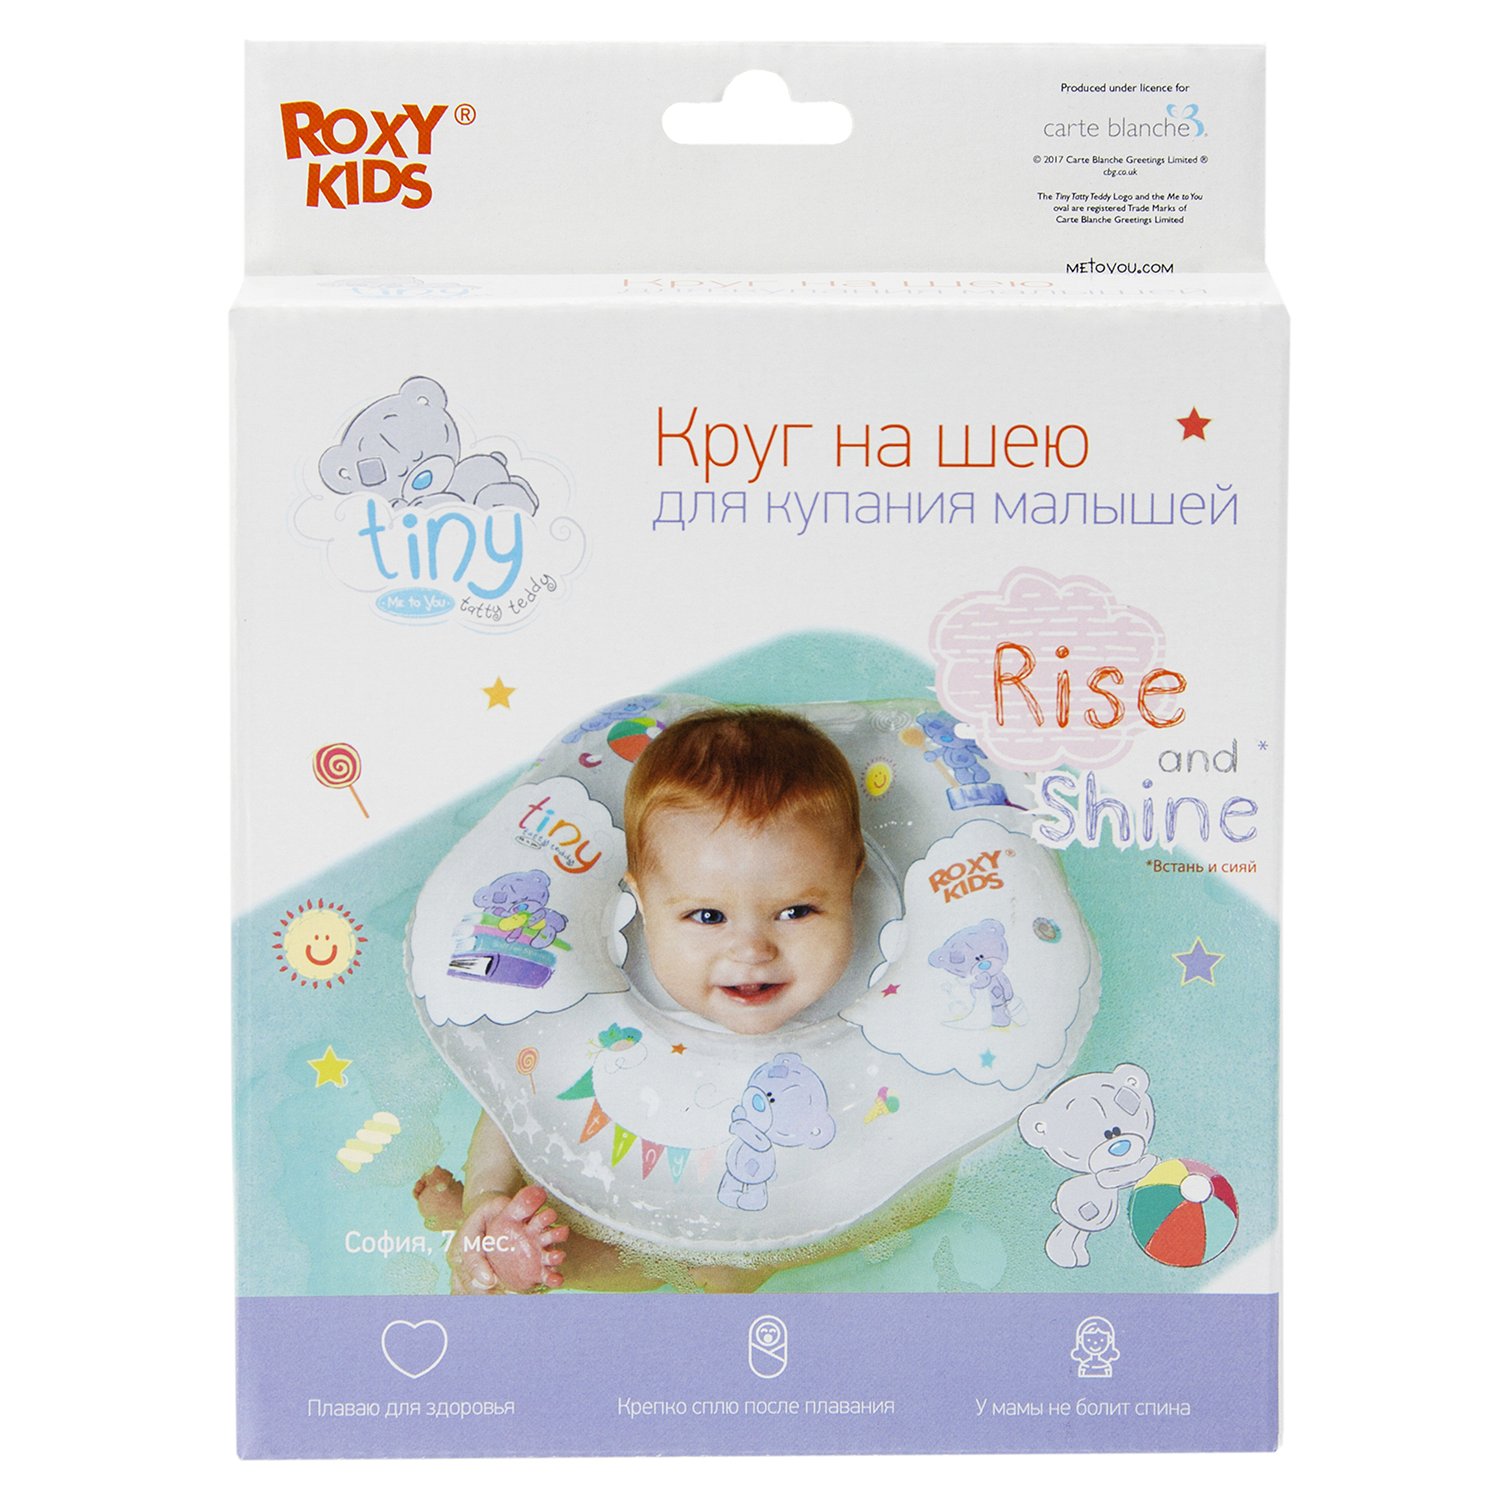 Круг на шею ROXY-KIDS Kids для купания малышей надувной Teddy Everyday - фото 3